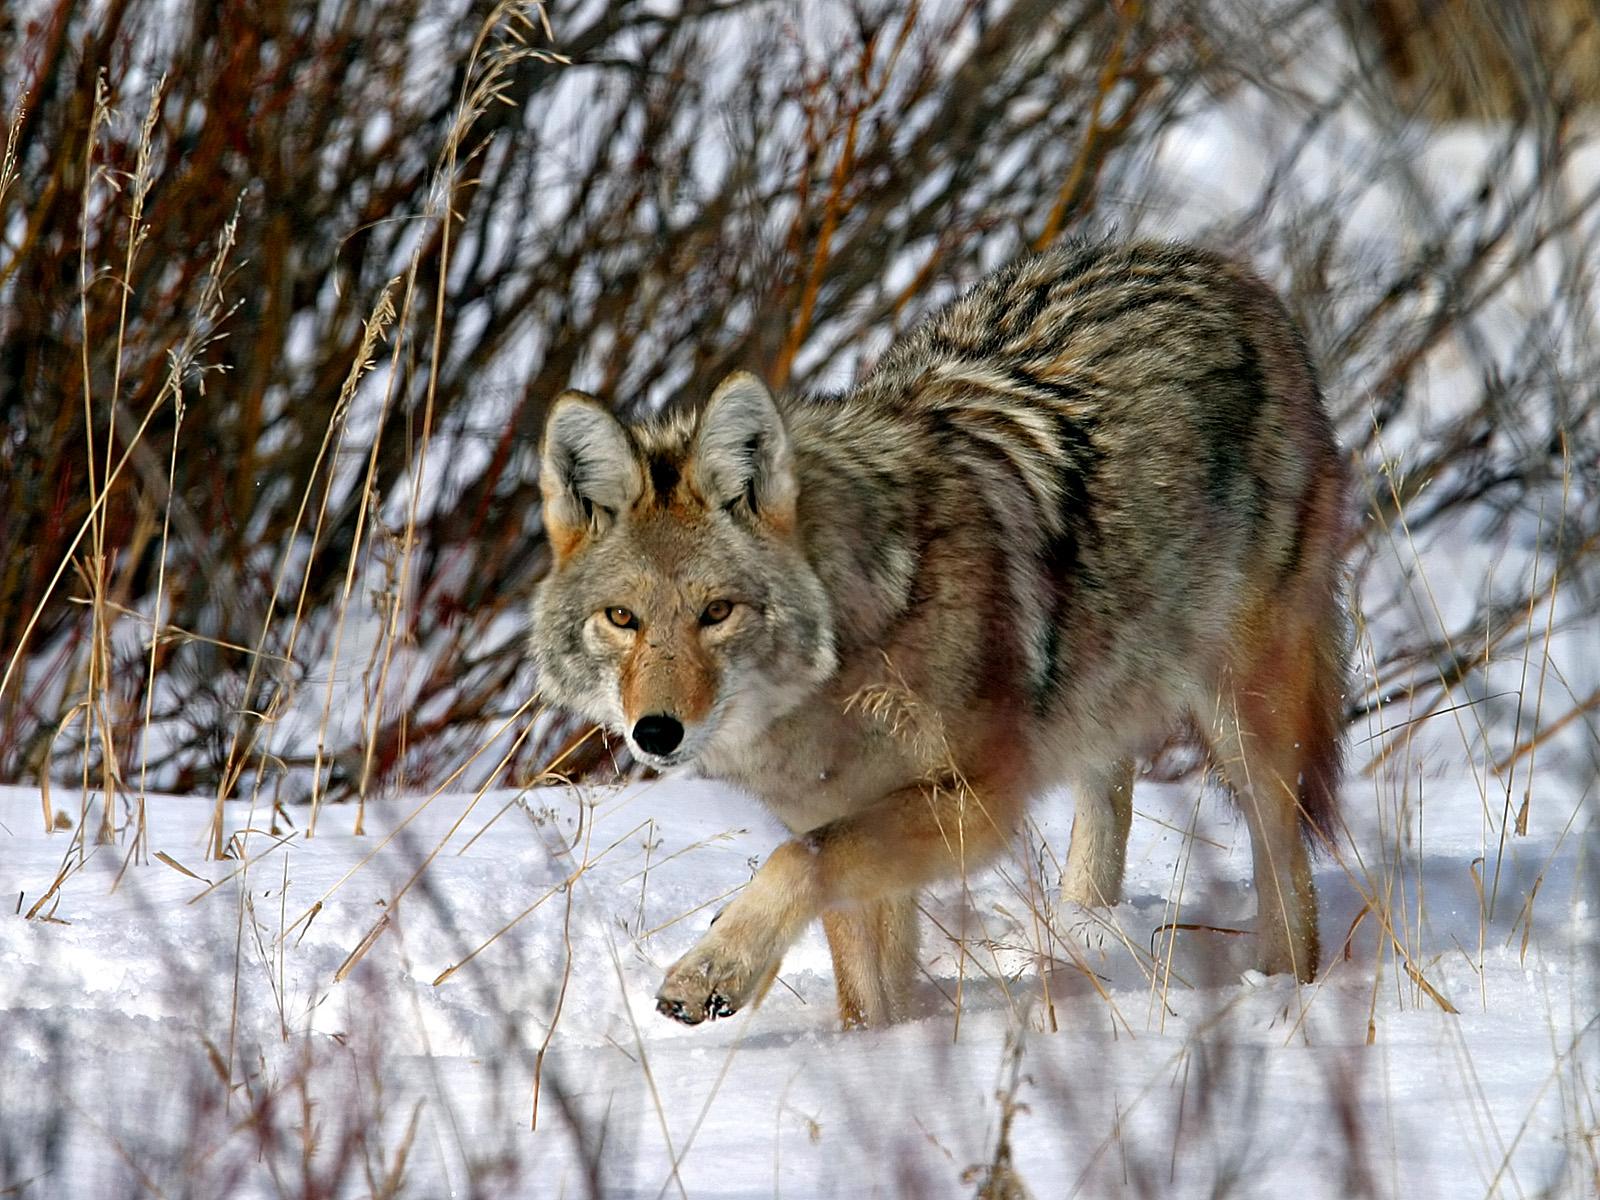 코요테 벽지,늑대,야생 동물,코요테,큰 개자리 루푸스 툰드라 룸,붉은 늑대